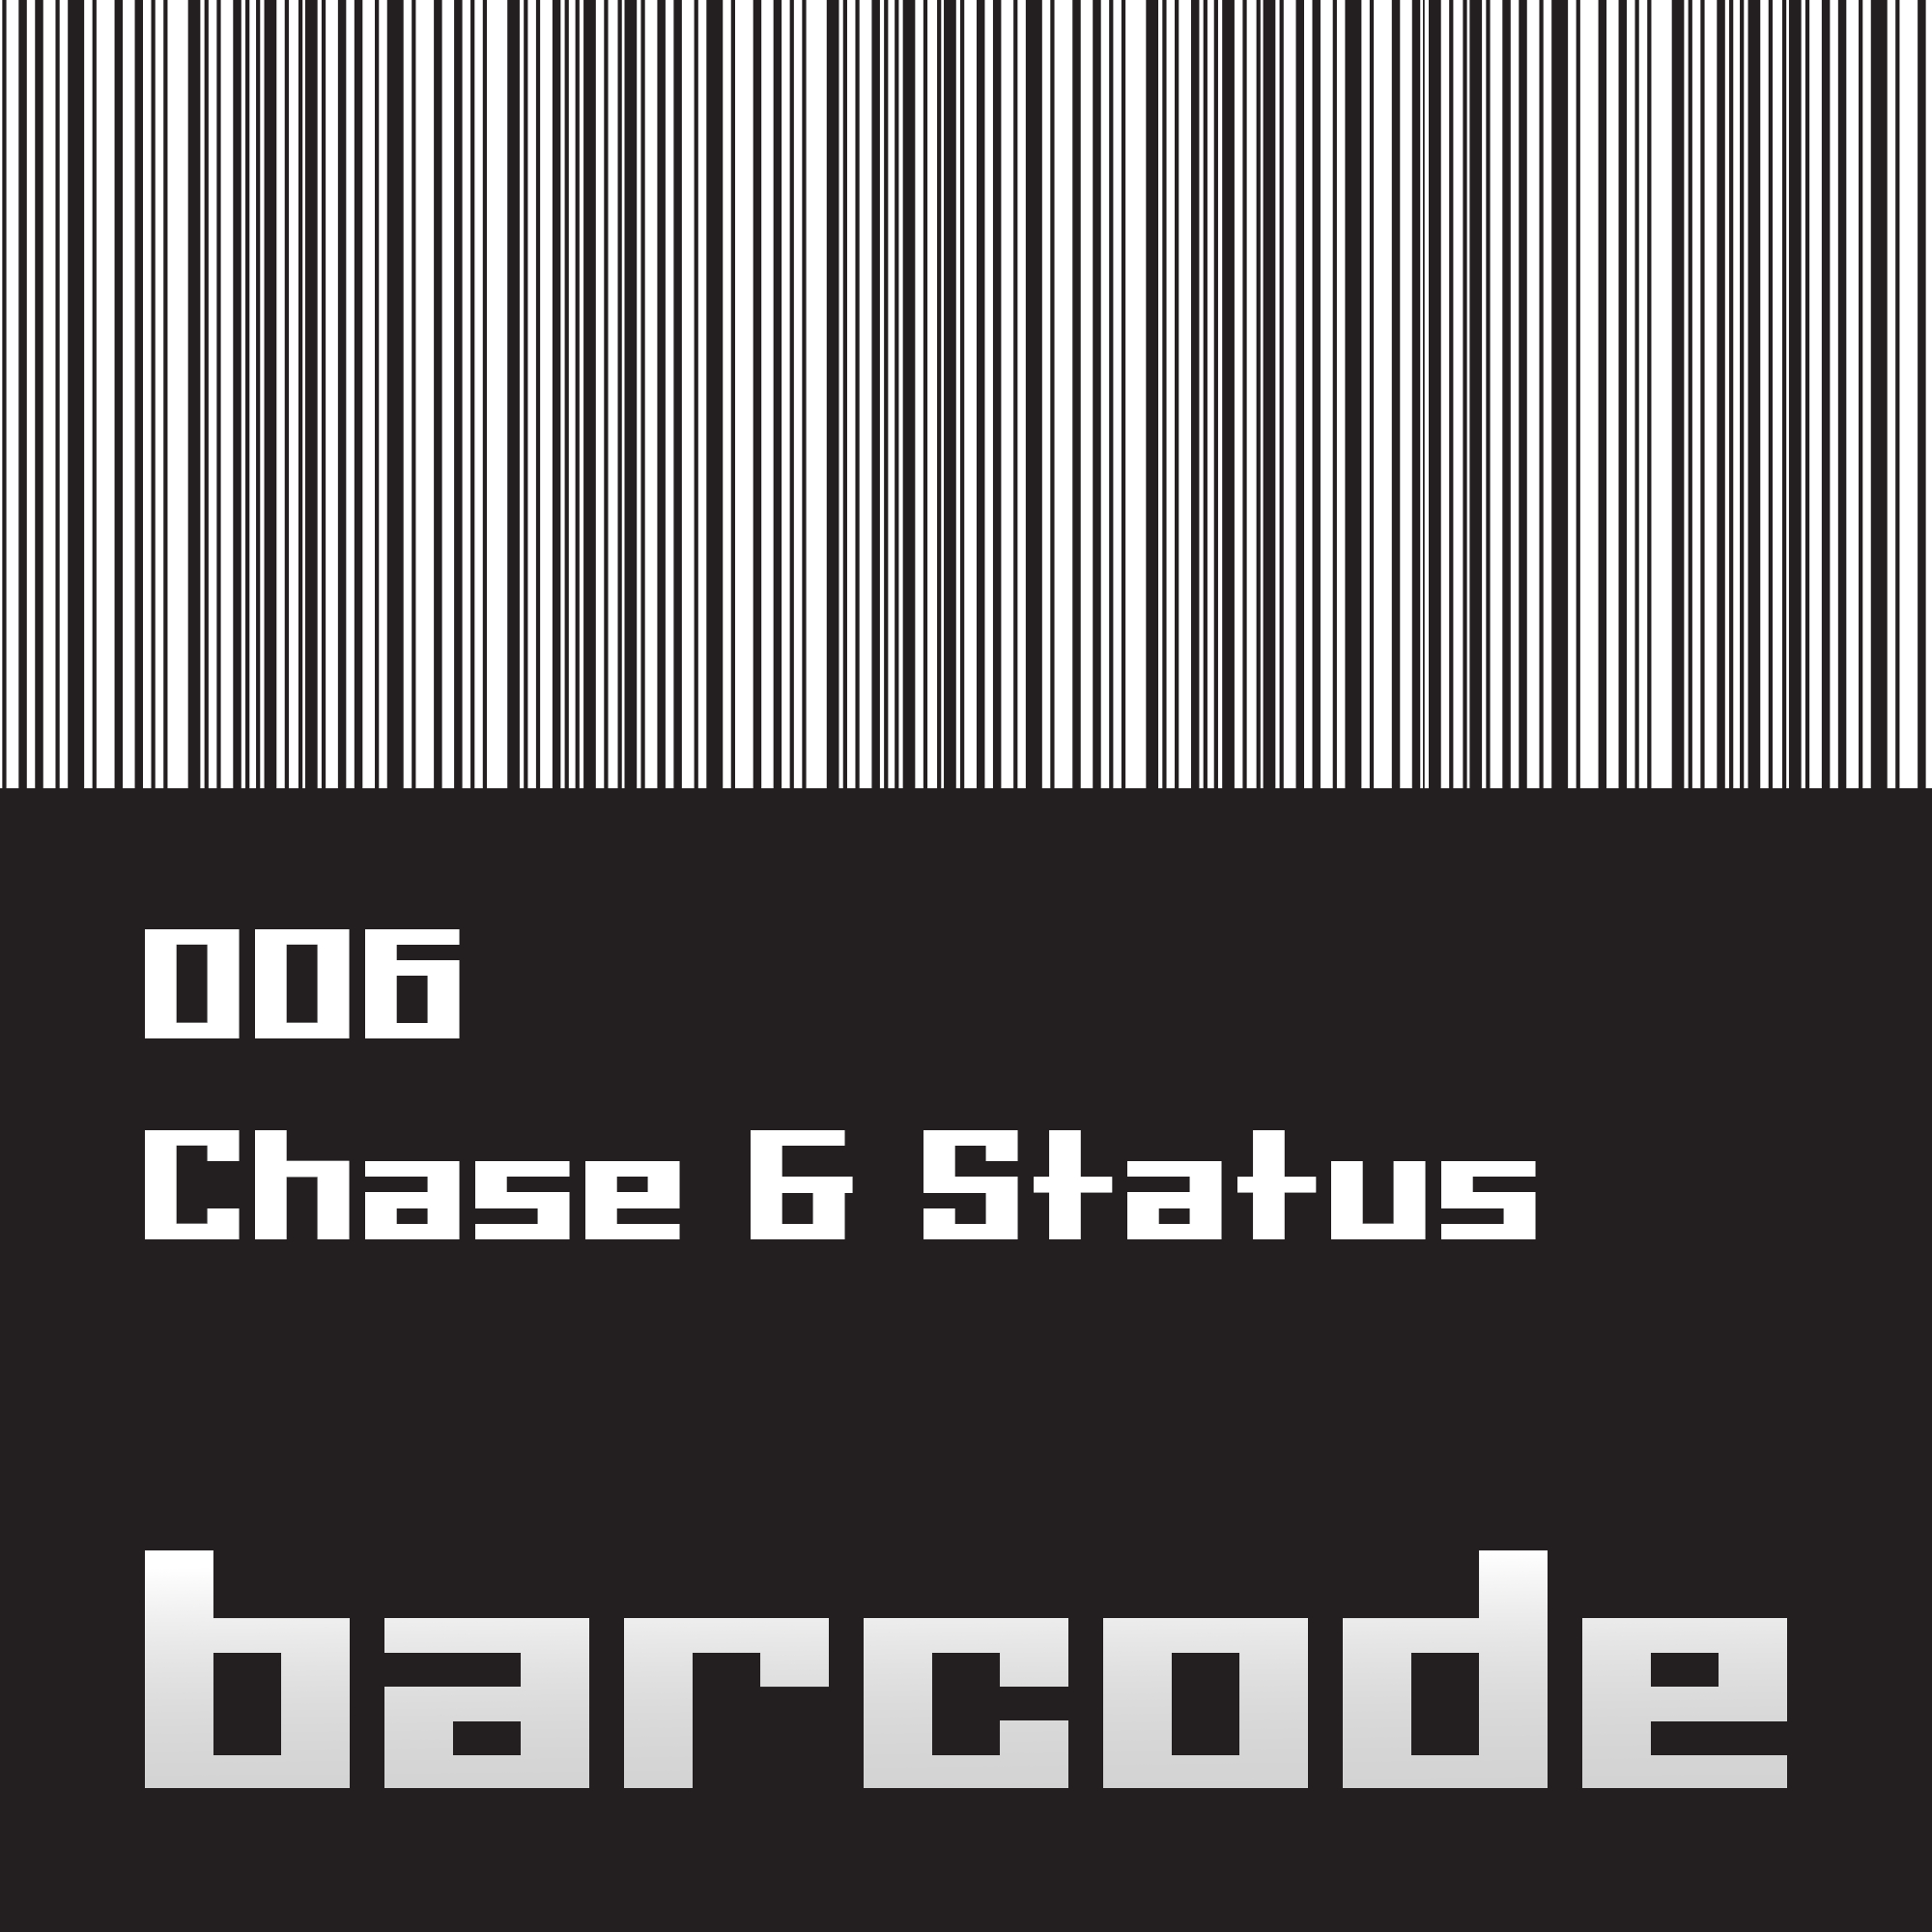 Barcode006.jpg